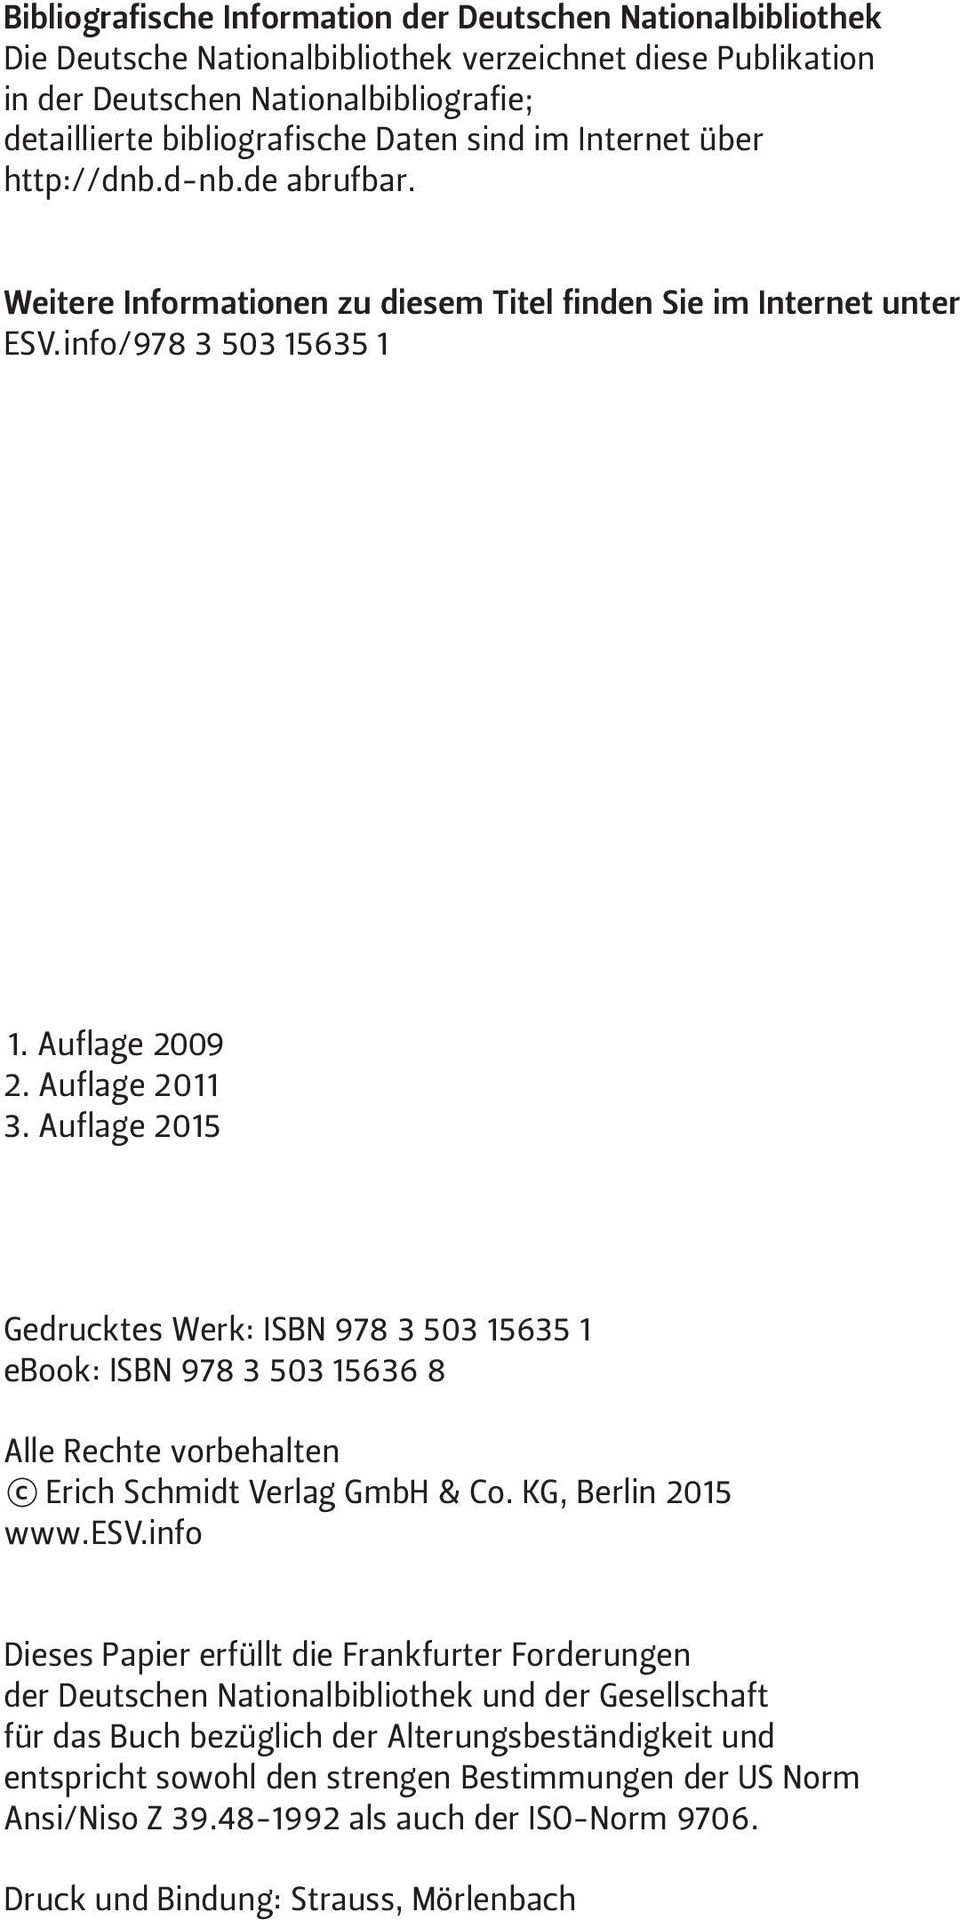 Auflage 2015 Gedrucktes Werk: ISBN 978 3 503 15635 1 ebook: ISBN 978 3 503 15636 8 Alle Rechte vorbehalten Erich Schmidt Verlag GmbH & Co. KG, Berlin 2015 www.esv.